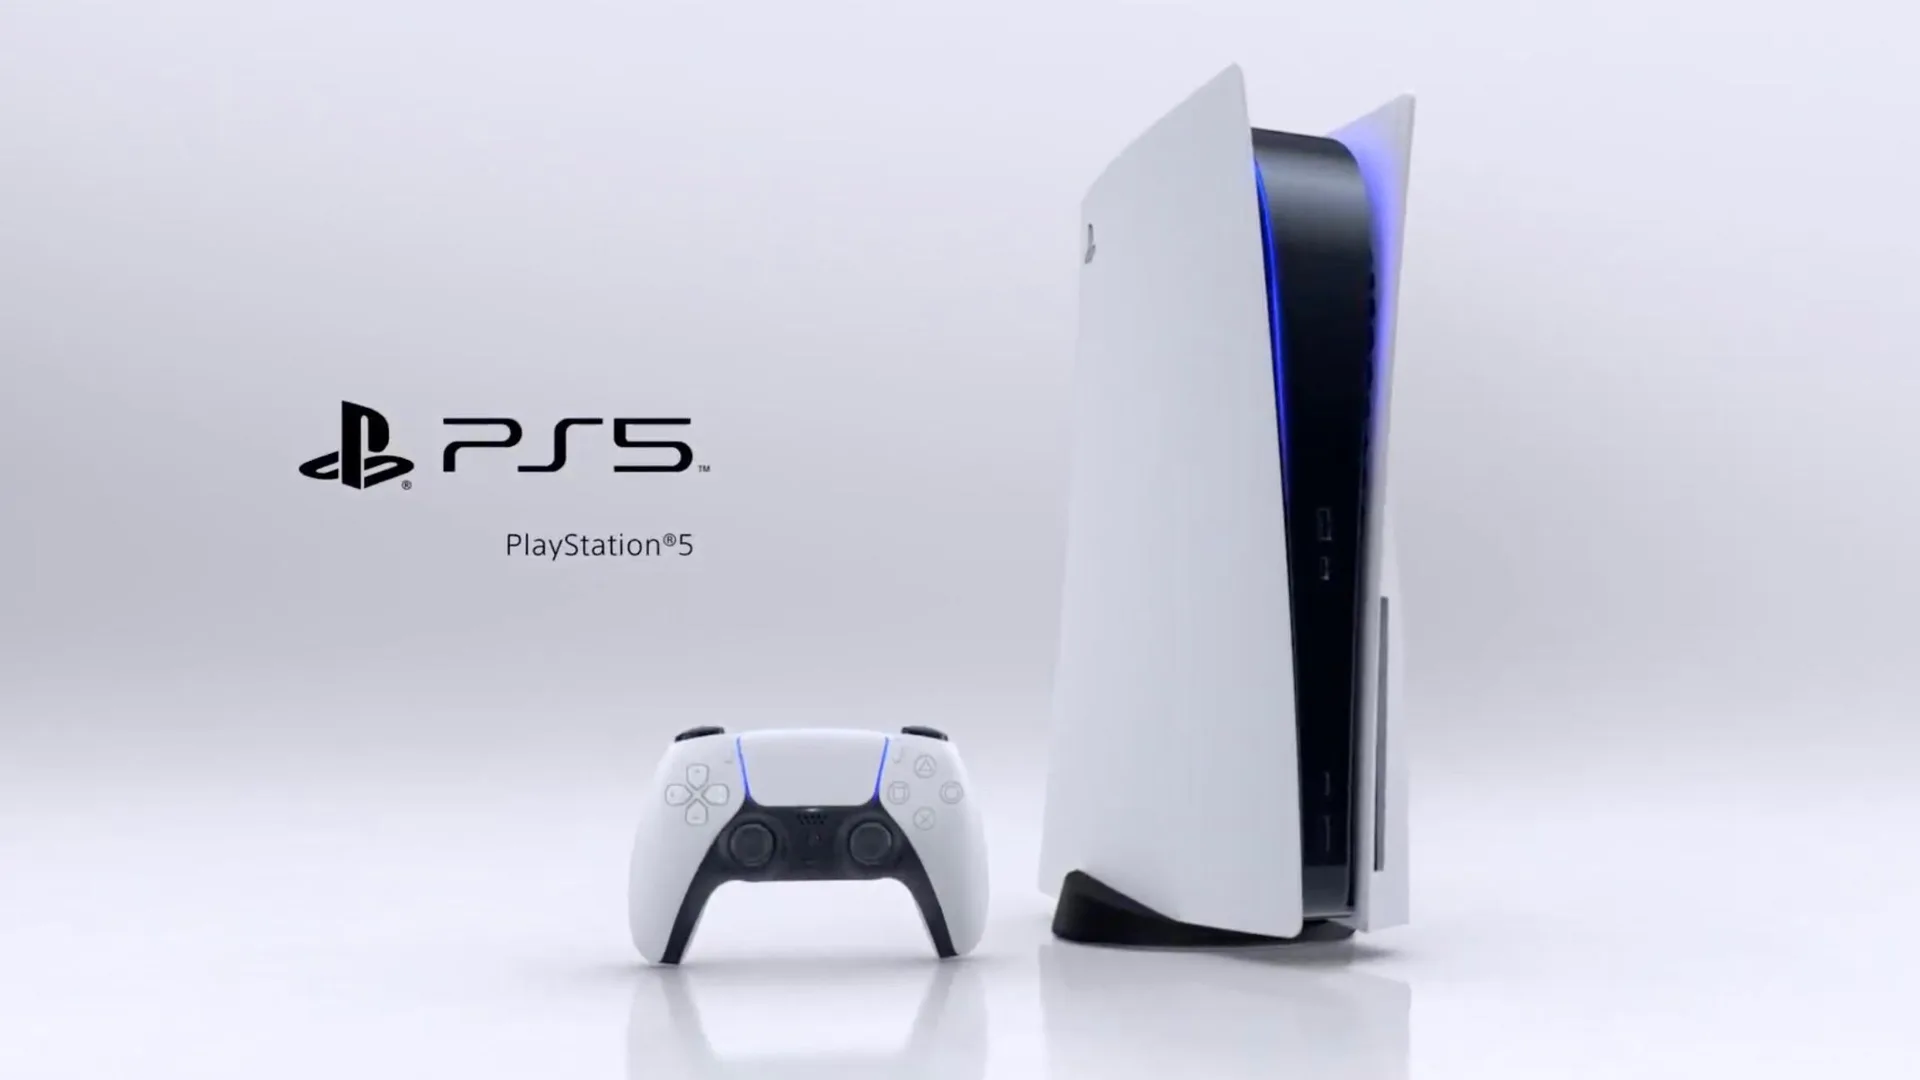 Περισσότερες από 38,4 εκατομμύρια κονσόλες PS5 έχει πουλήσει η Sony μέχρι σήμερα